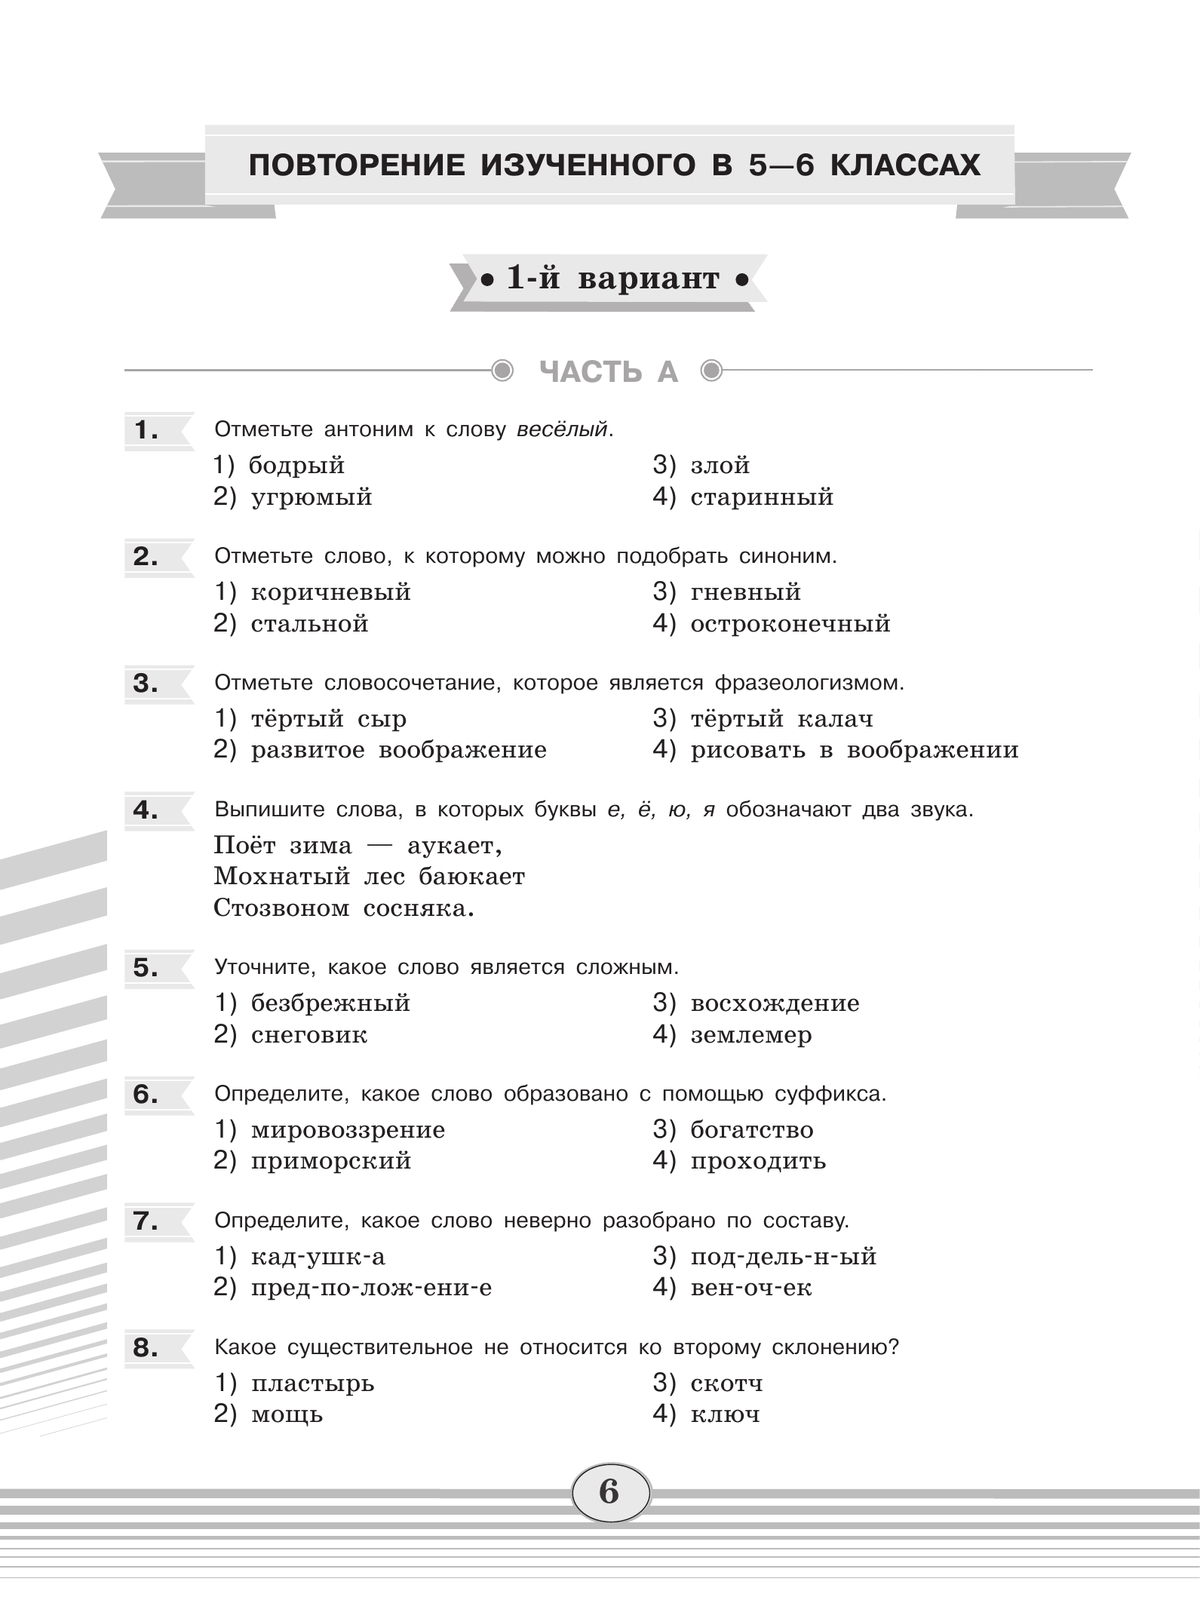 Русский язык. Диагностические работы.7 класс 2